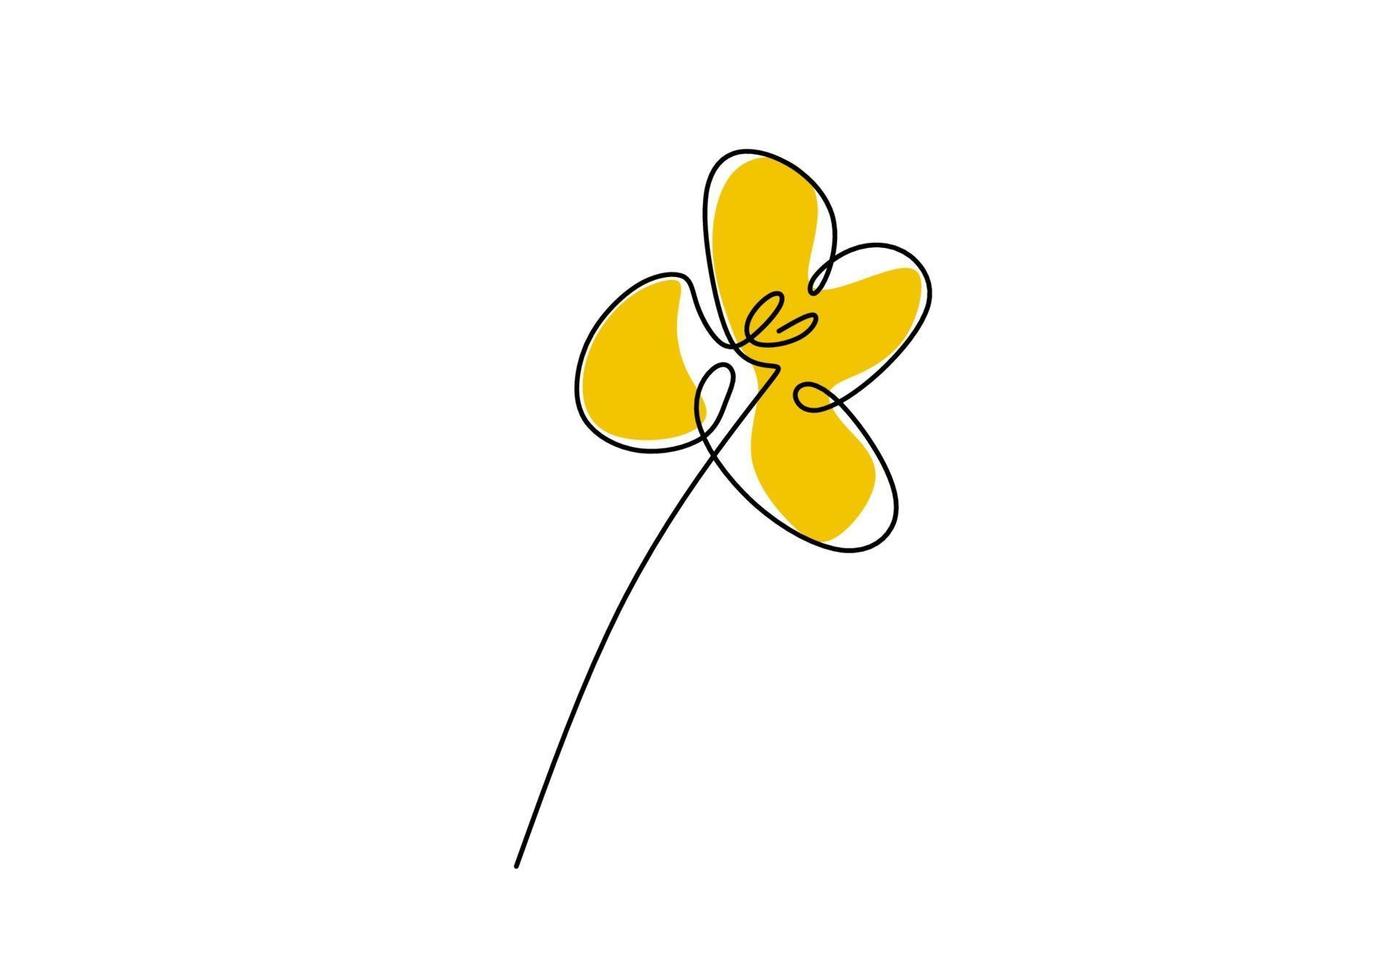 bellissimo fiore di primavera in un disegno a tratteggio continuo. fiori nanohana, piante stagionali in giappone. design minimalista disegnato a mano di fiore di stupro giallo. botanica concetto floreale. illustrazione vettoriale